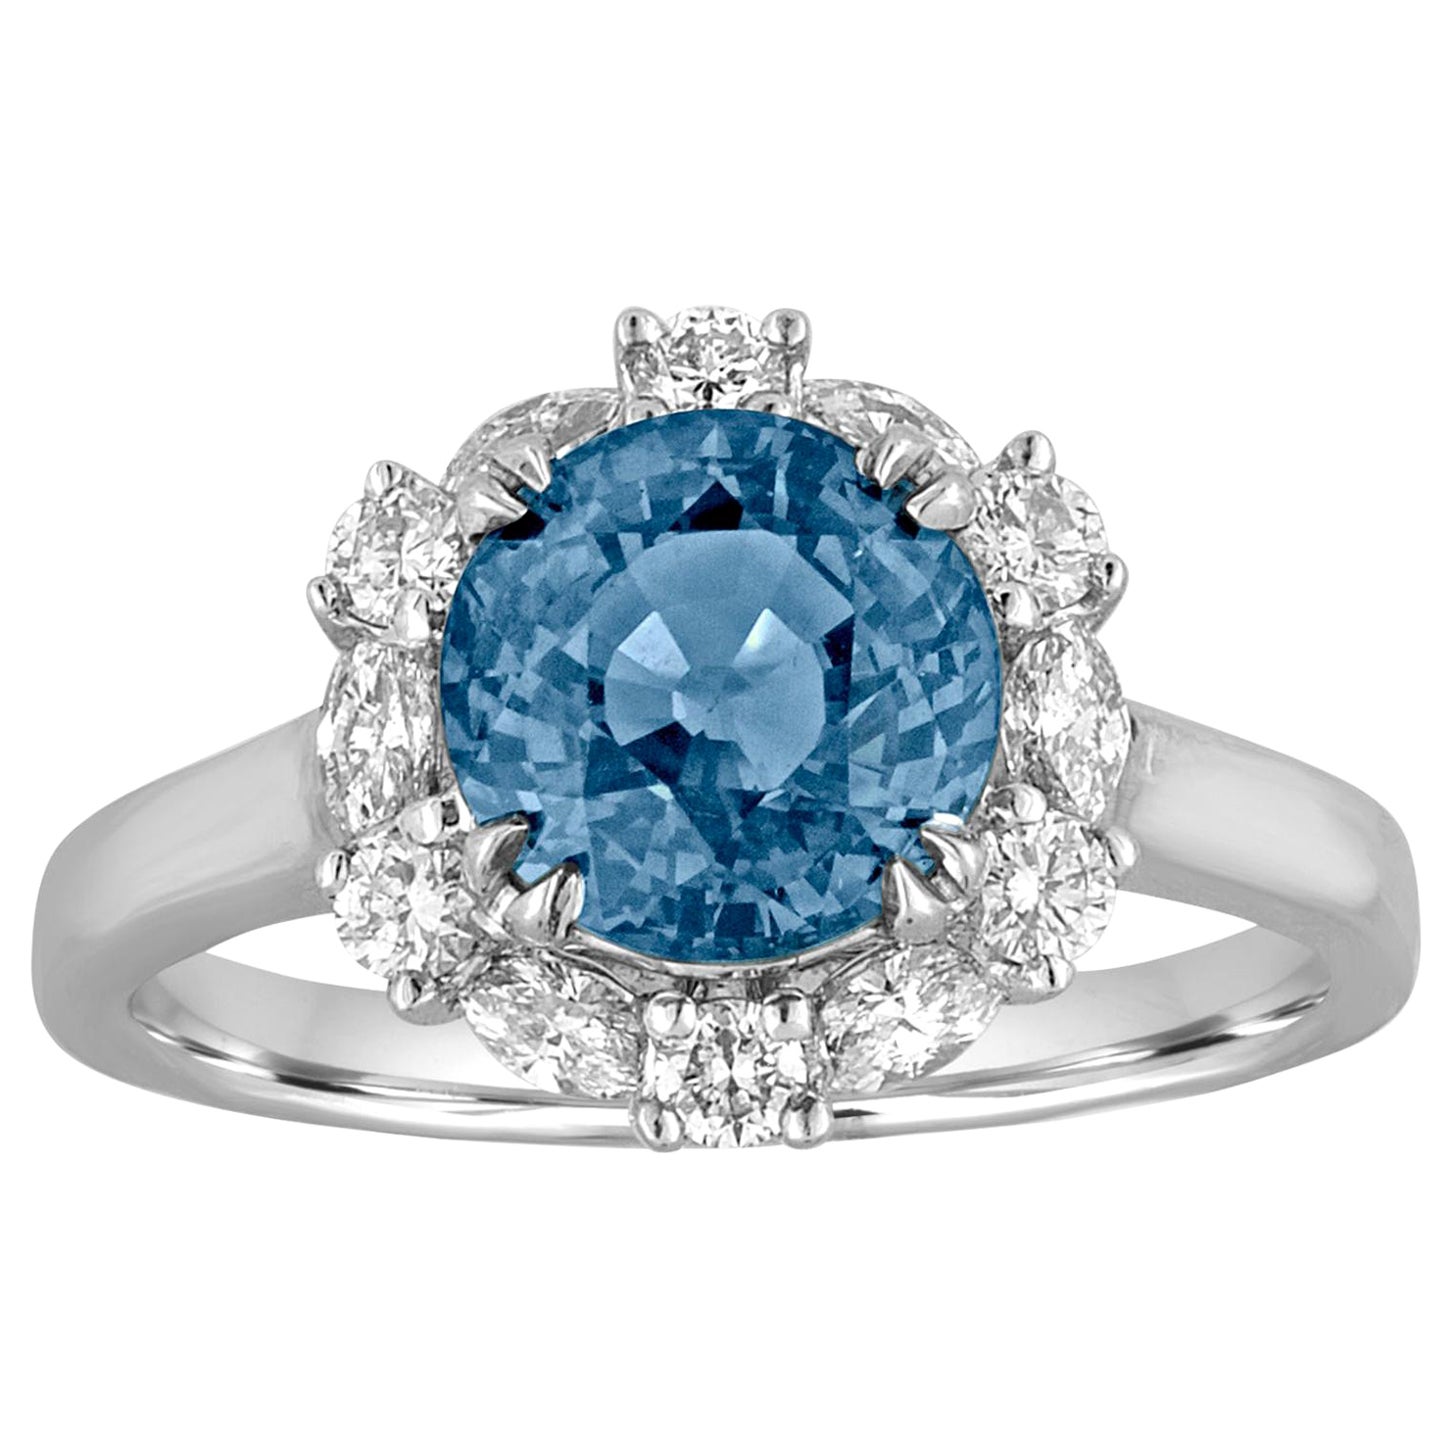 Bague avec saphir bleu ciel certifié sans chaleur de 2,97 carats et halo de diamants